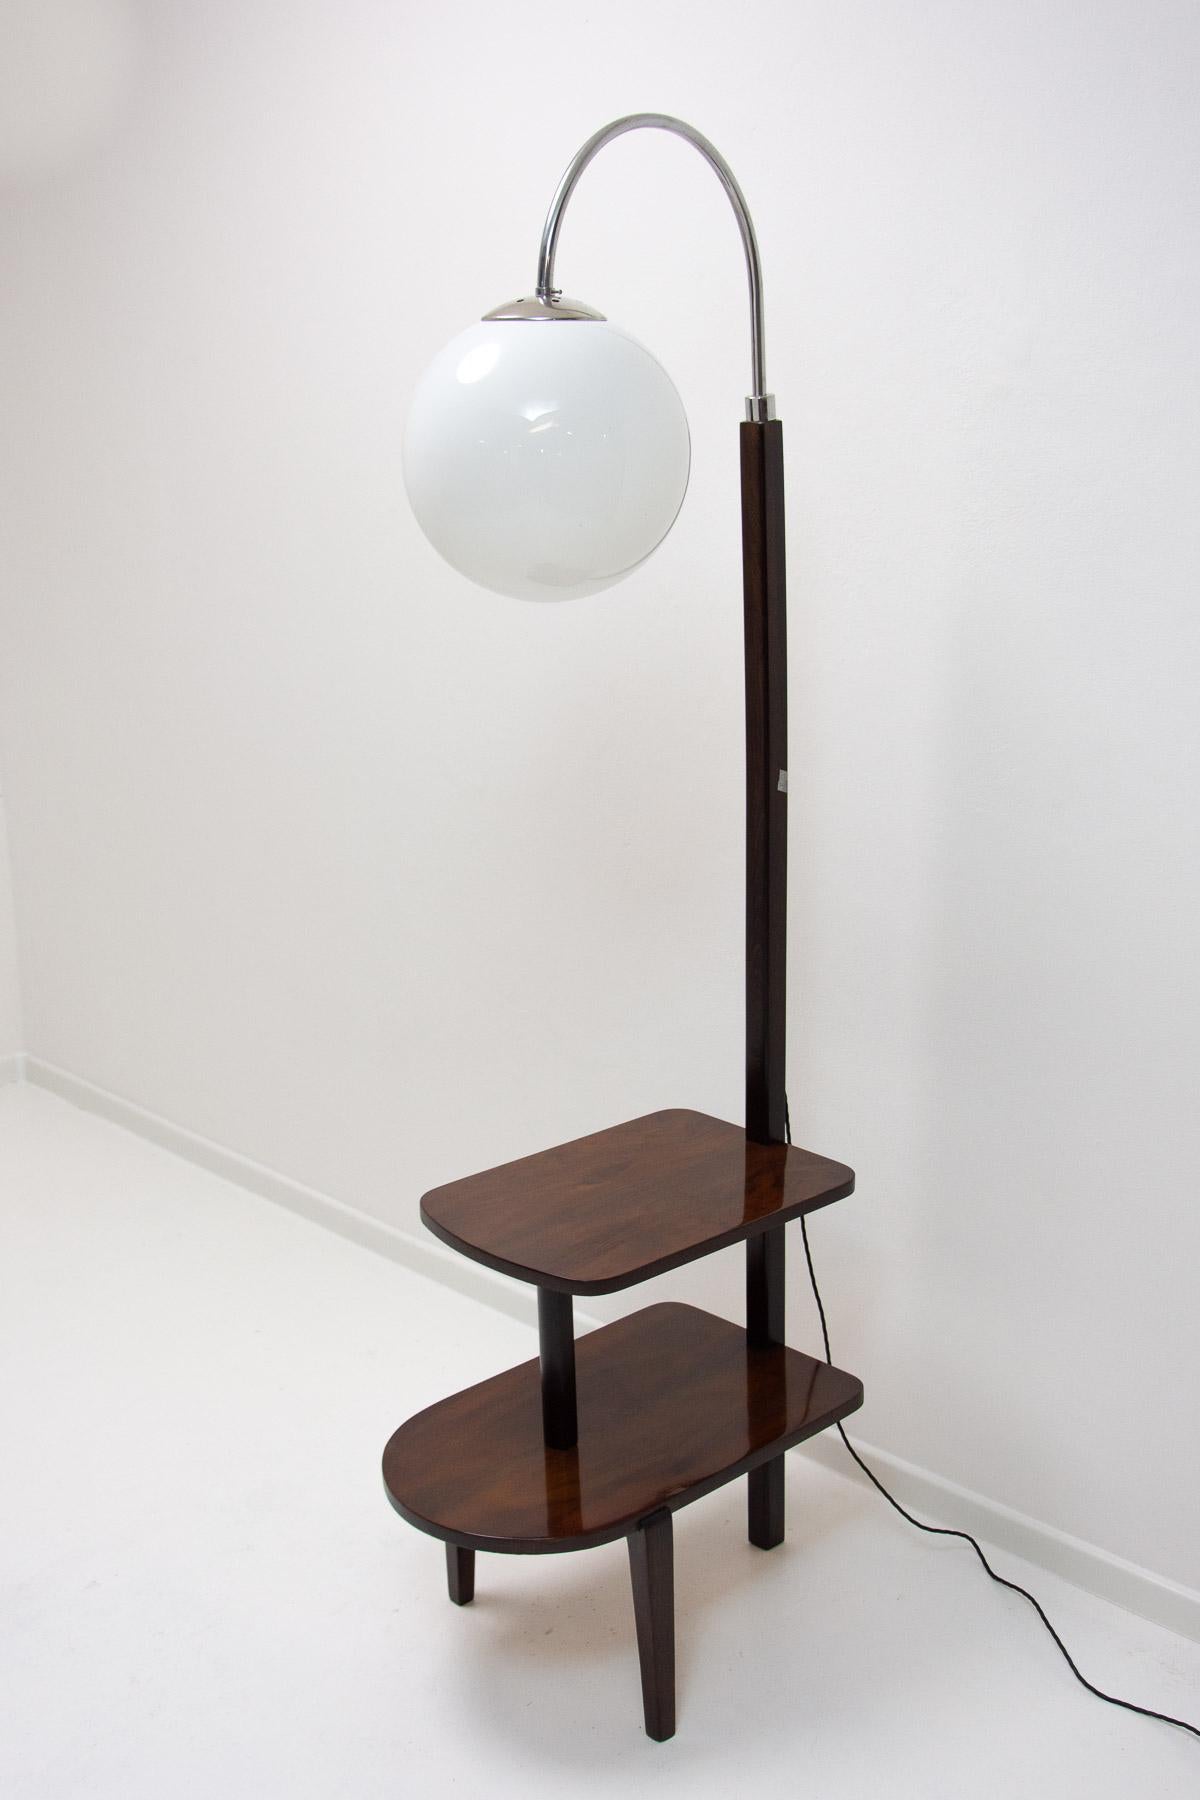 Lampadaire Thonet, cataloque No. D-623, mobilier ART DECO, fabriqué en Bohemia dans les années 1920/1930.  Tige chromée avec une partie en bois - bois de noyer.  Peut également servir de table d'appoint ou de table de nuit. Entièrement restauré,